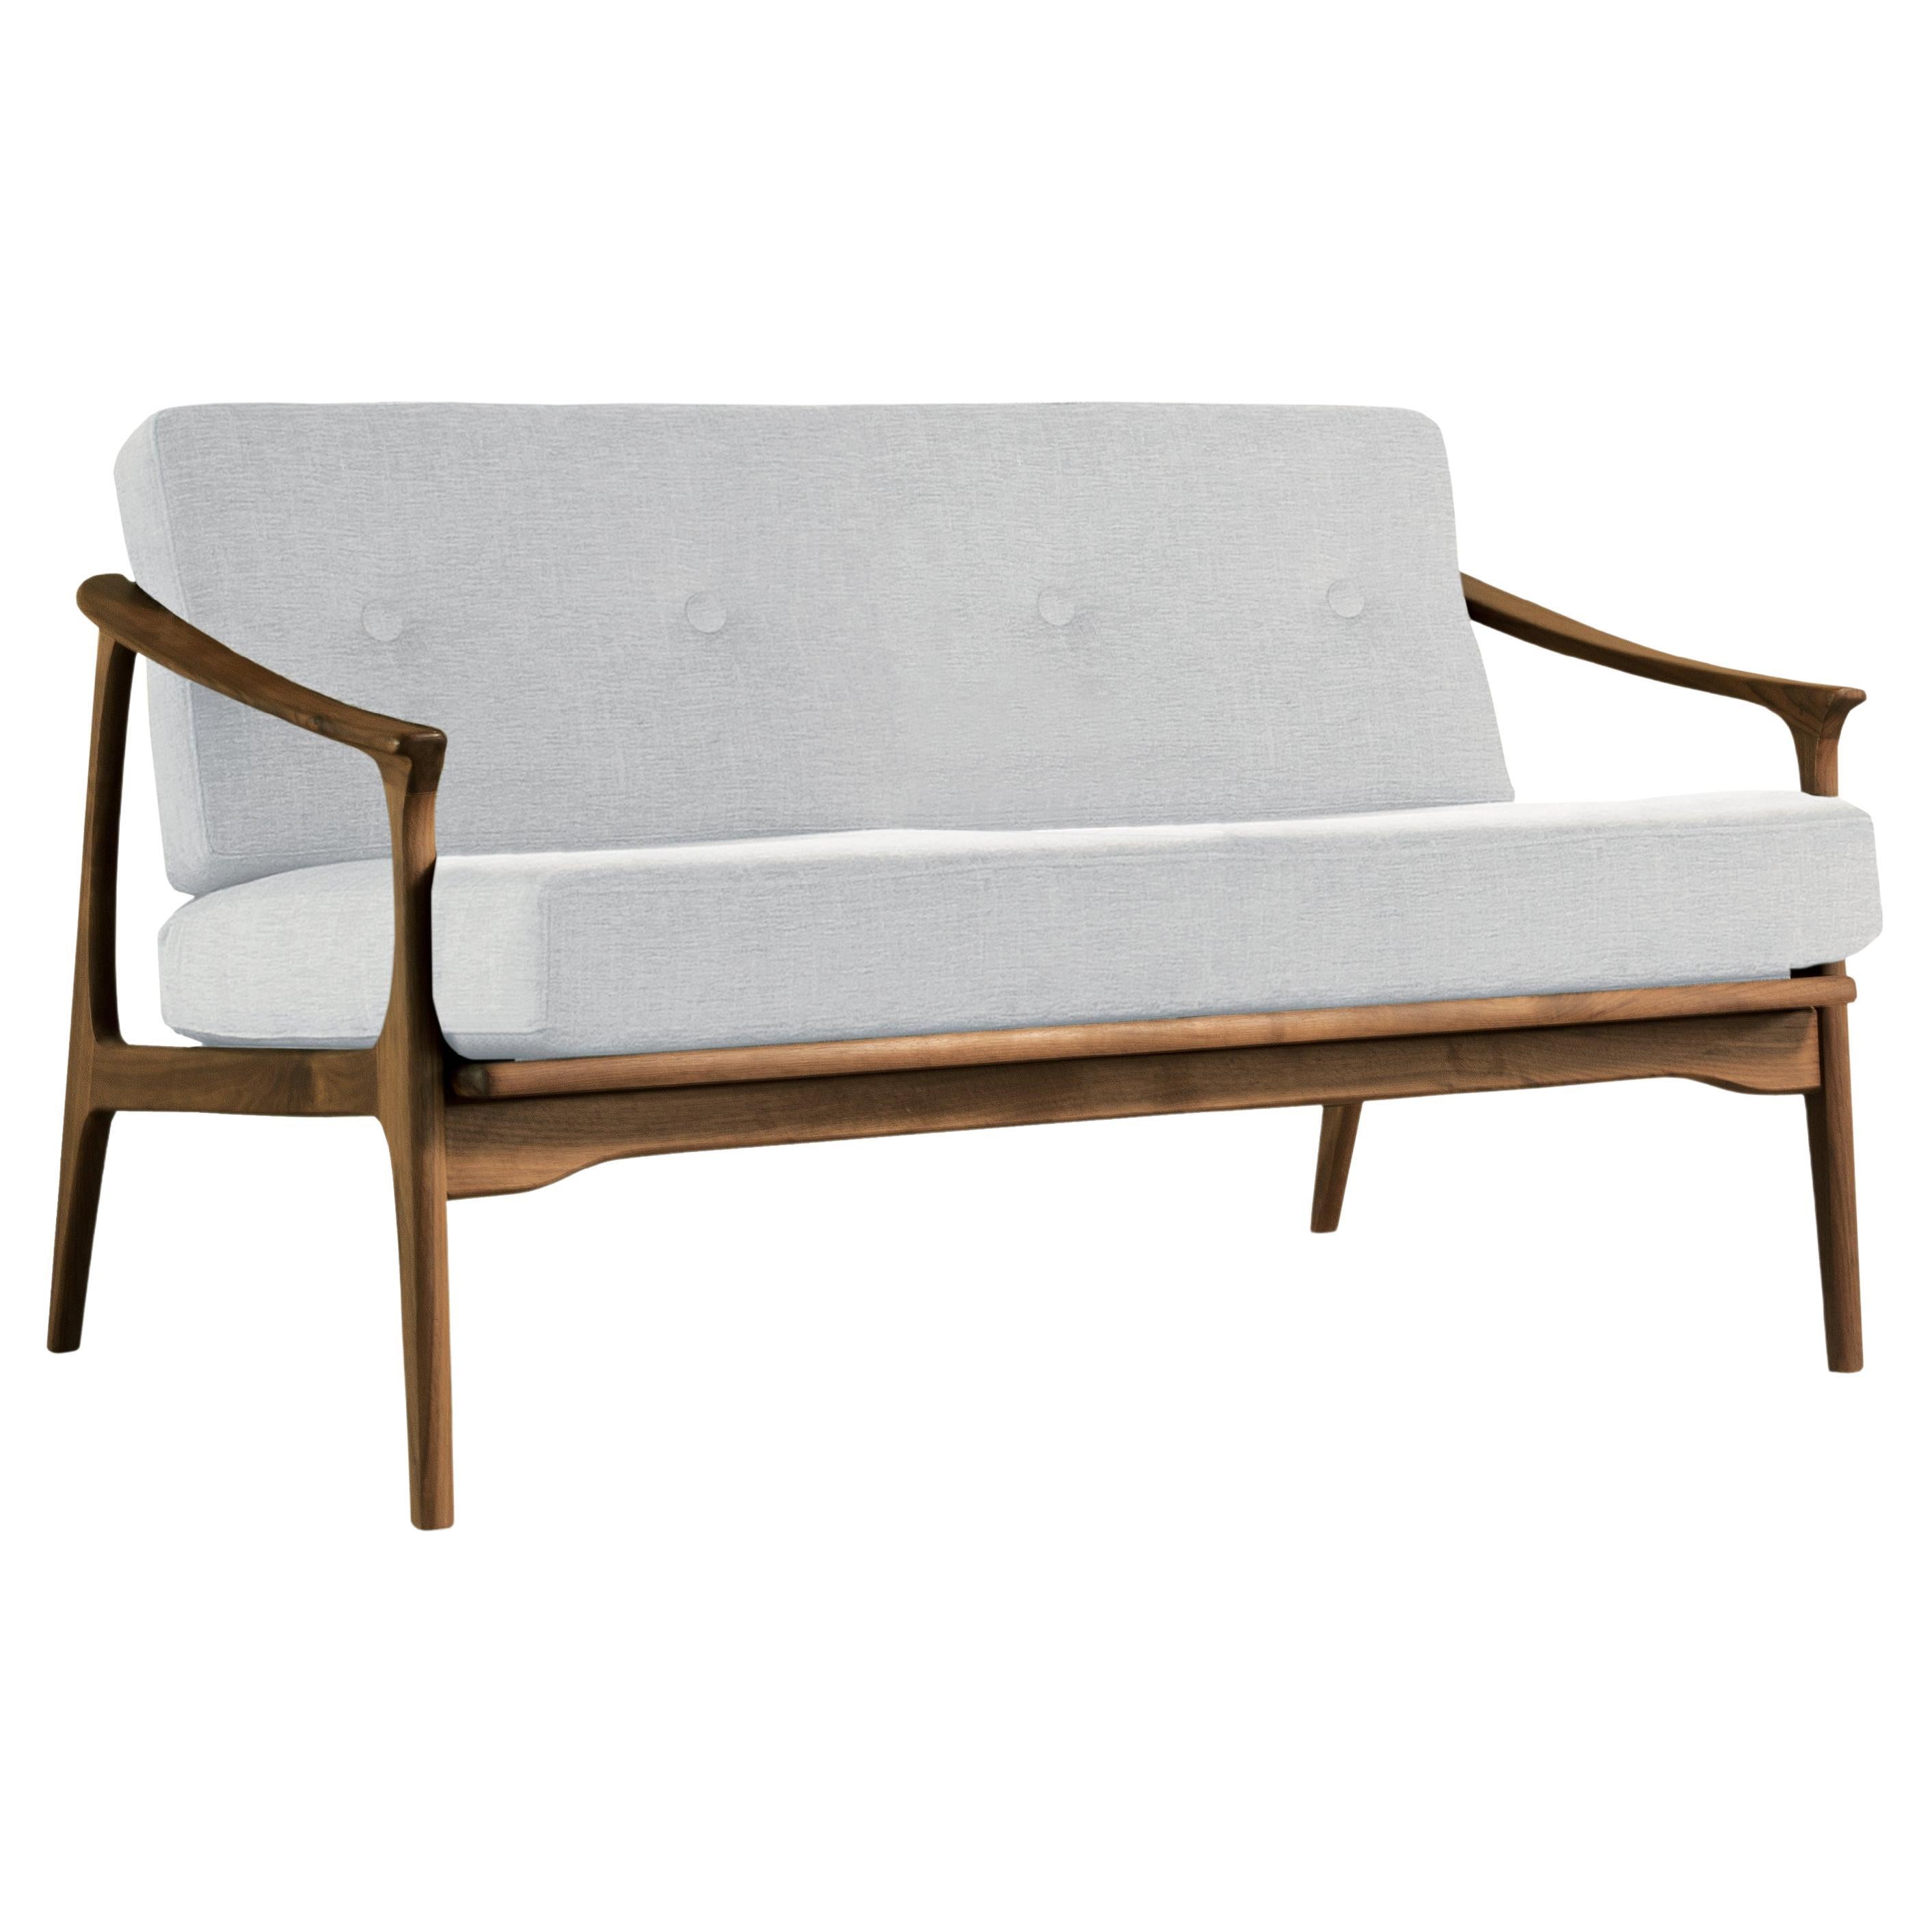 Quiete-Sofa aus Massivholz, Nussbaum in handgefertigter Naturausführung, zeitgenössisches Design